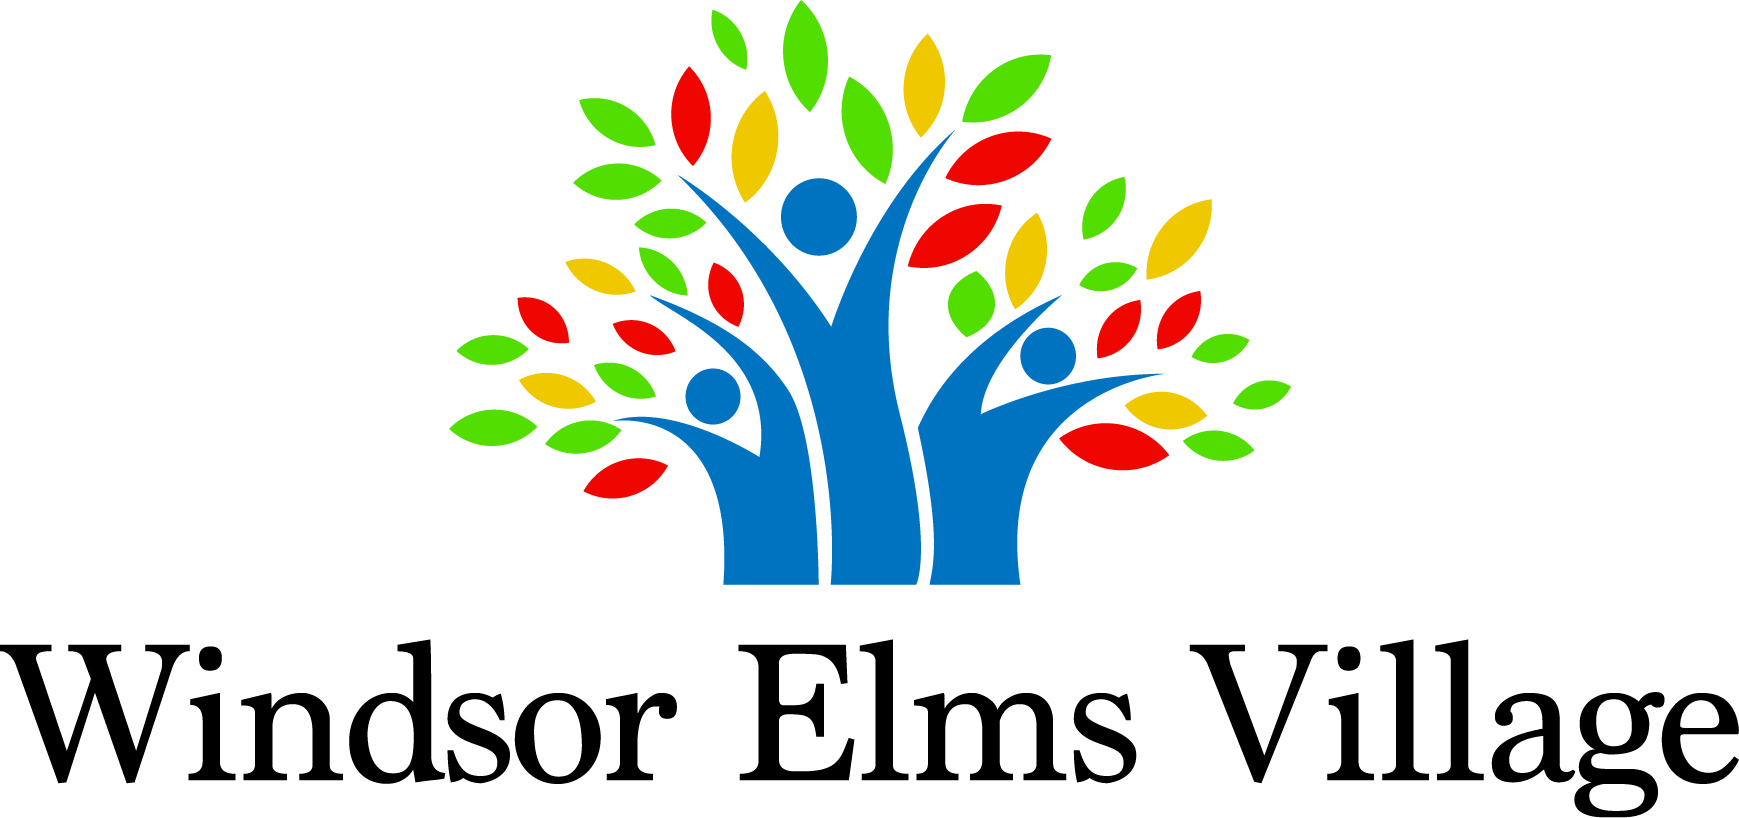 WINDSOR ELMS VILLAGE logo